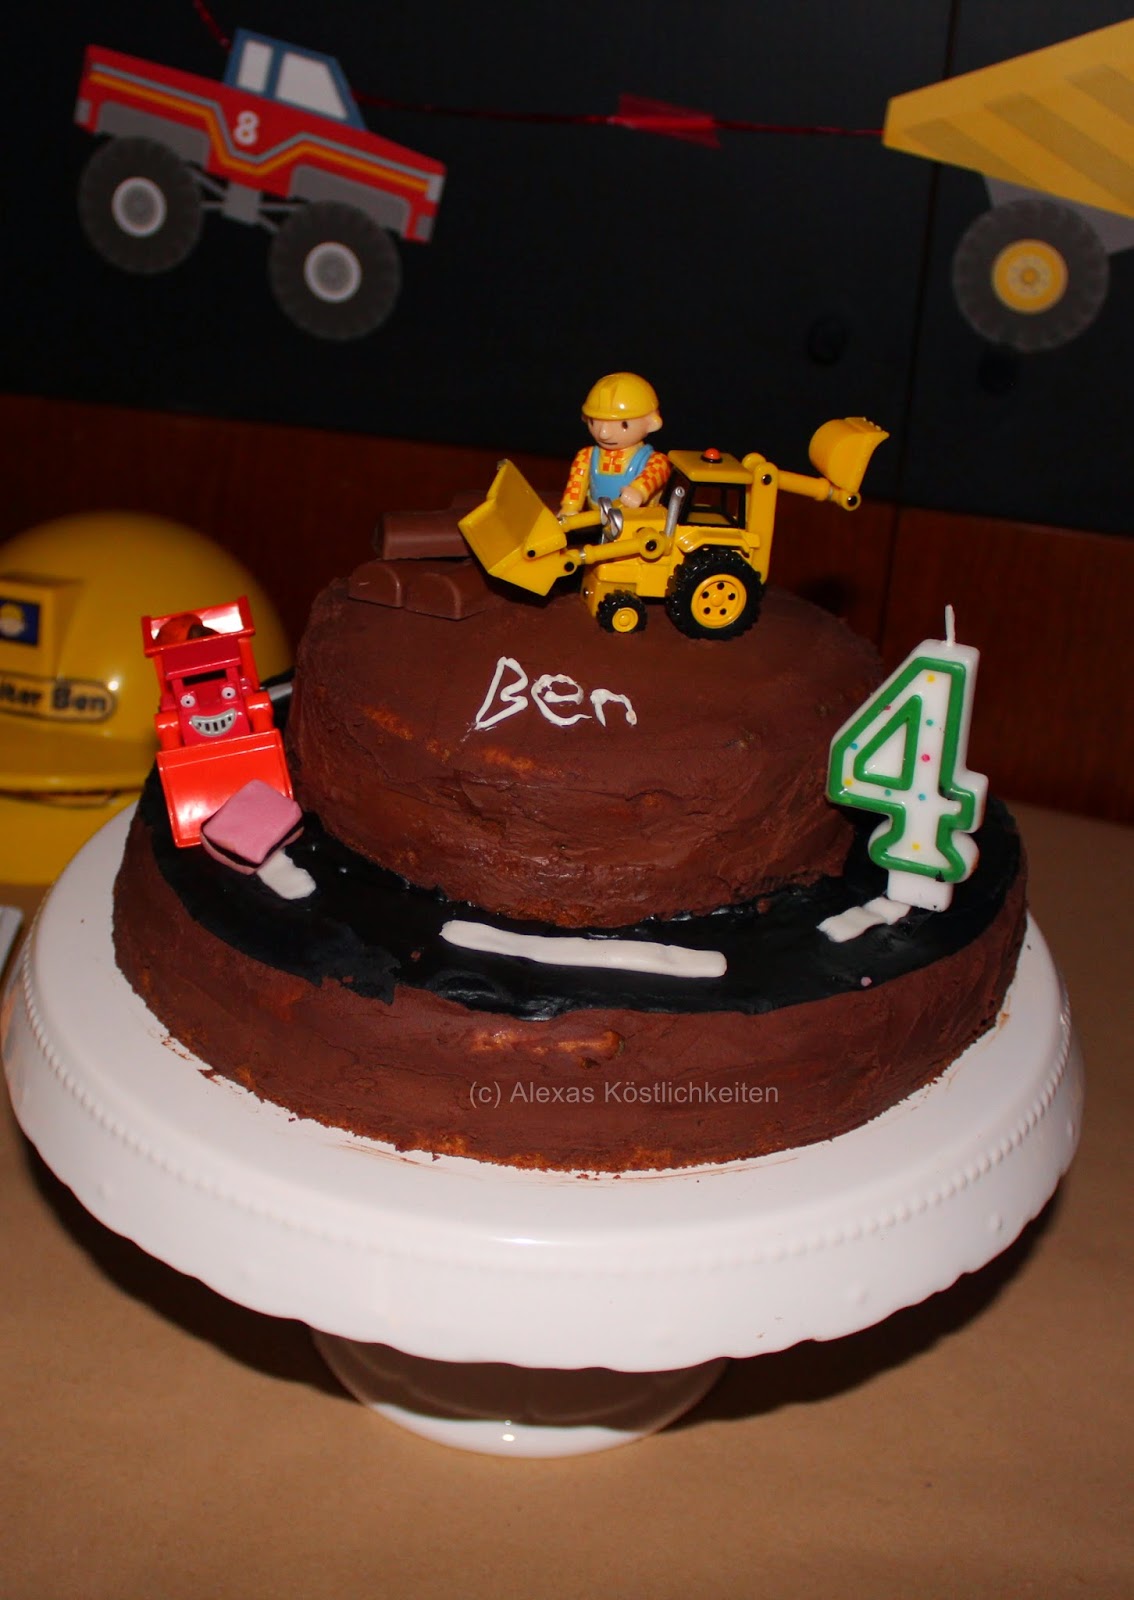 Alexa´s Köstlichkeiten: Bob der Baumeister Geburtstagstorte